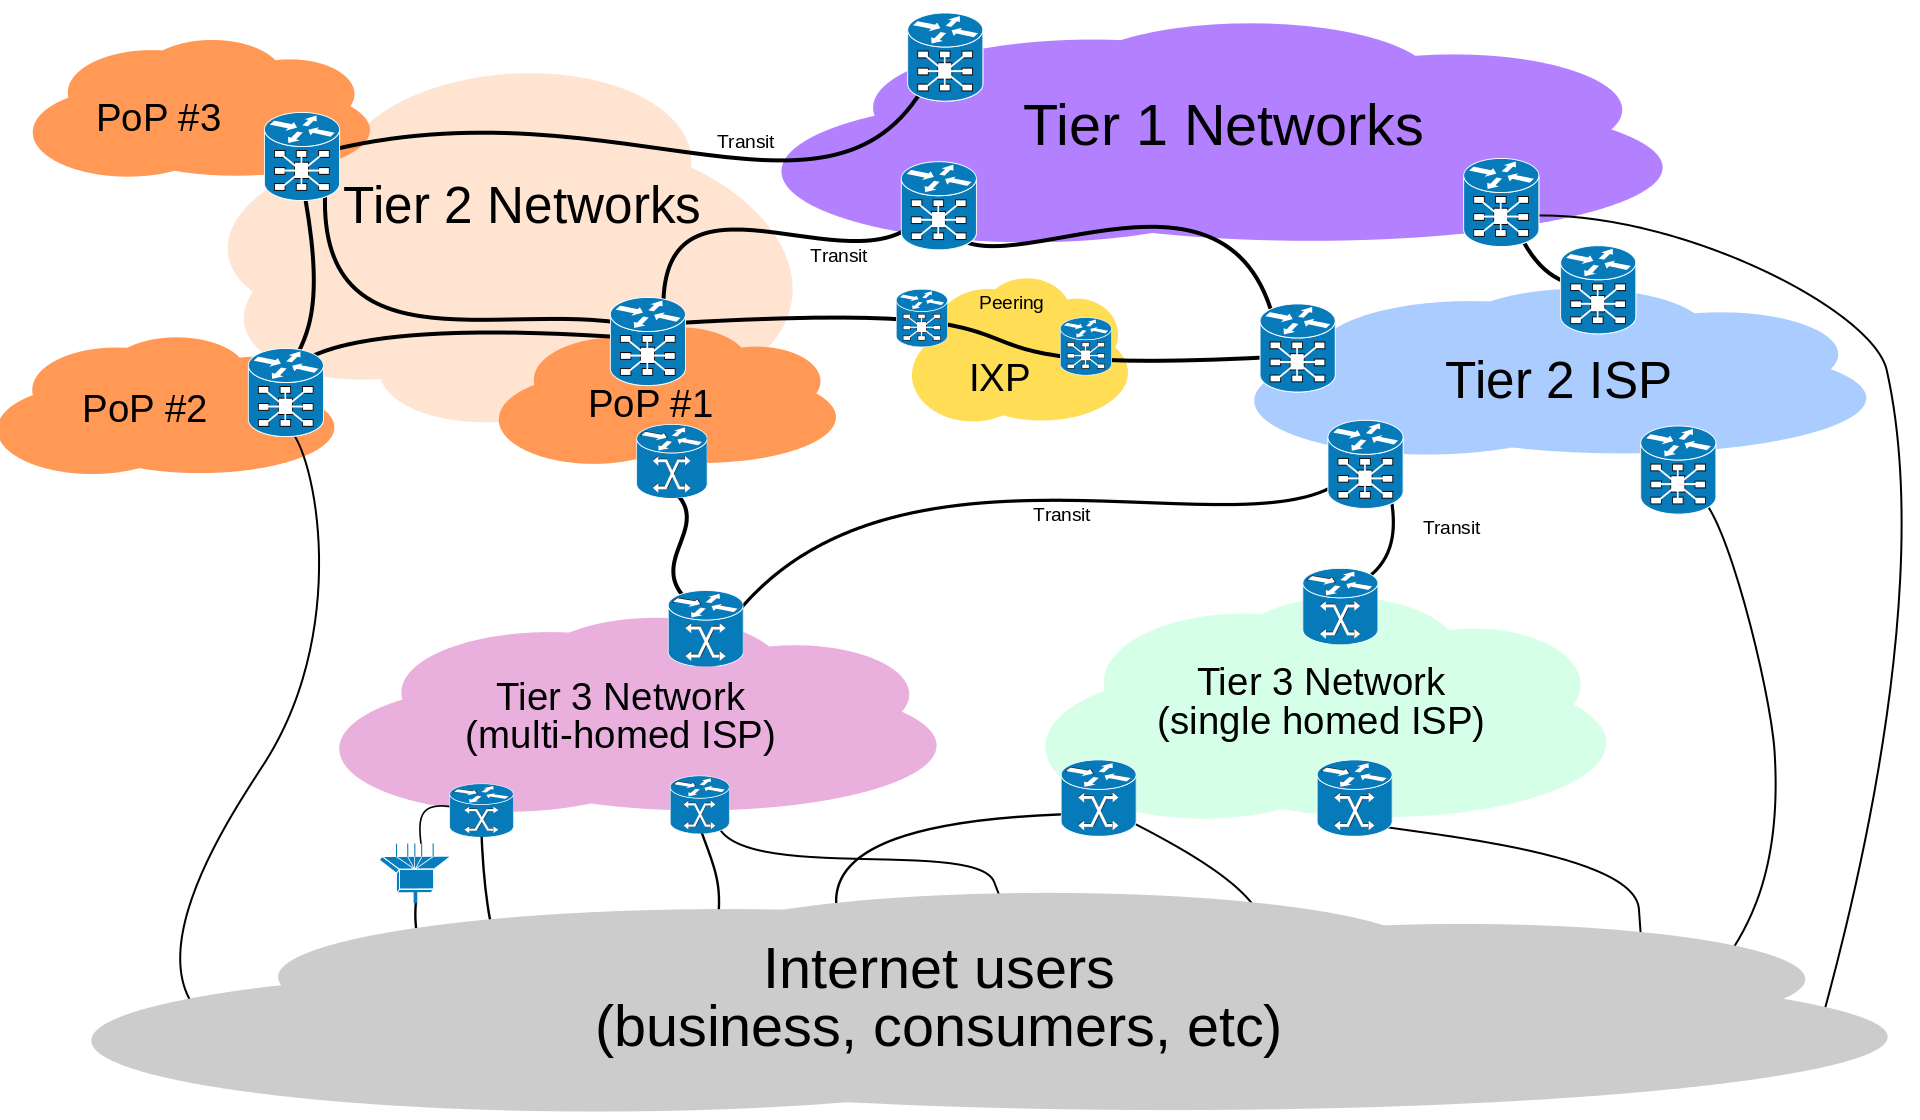 Internet service provider is. Провайдеры первого уровня. Уровни провайдеров. Интернет провайдеры первого уровня. Уровни провайдеров интернета.